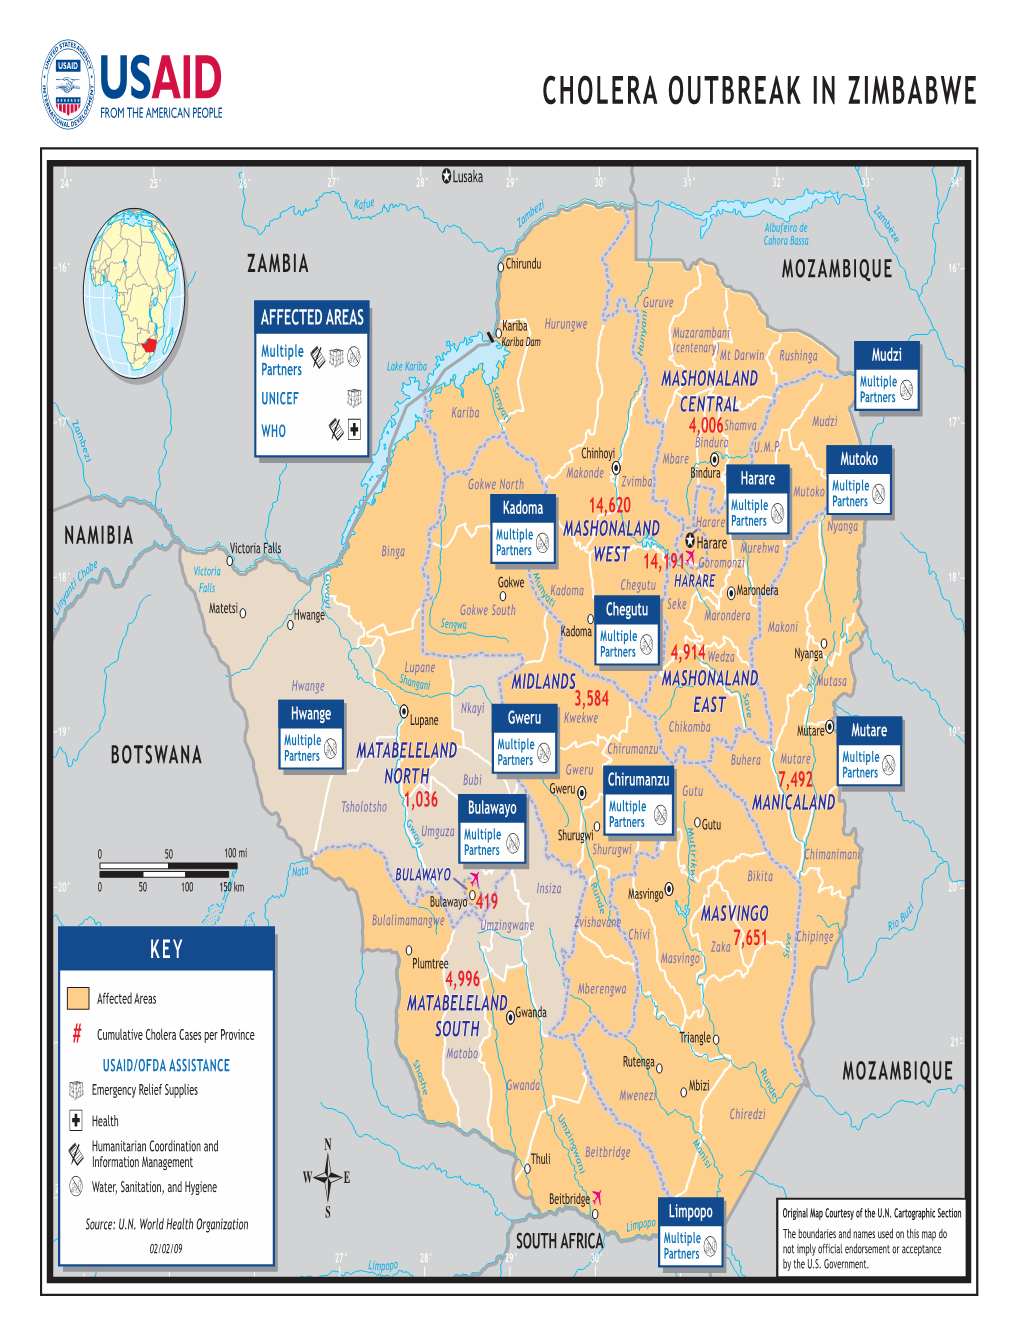 USAID/OFDA Zimbabwe Program Map 2/02/2009